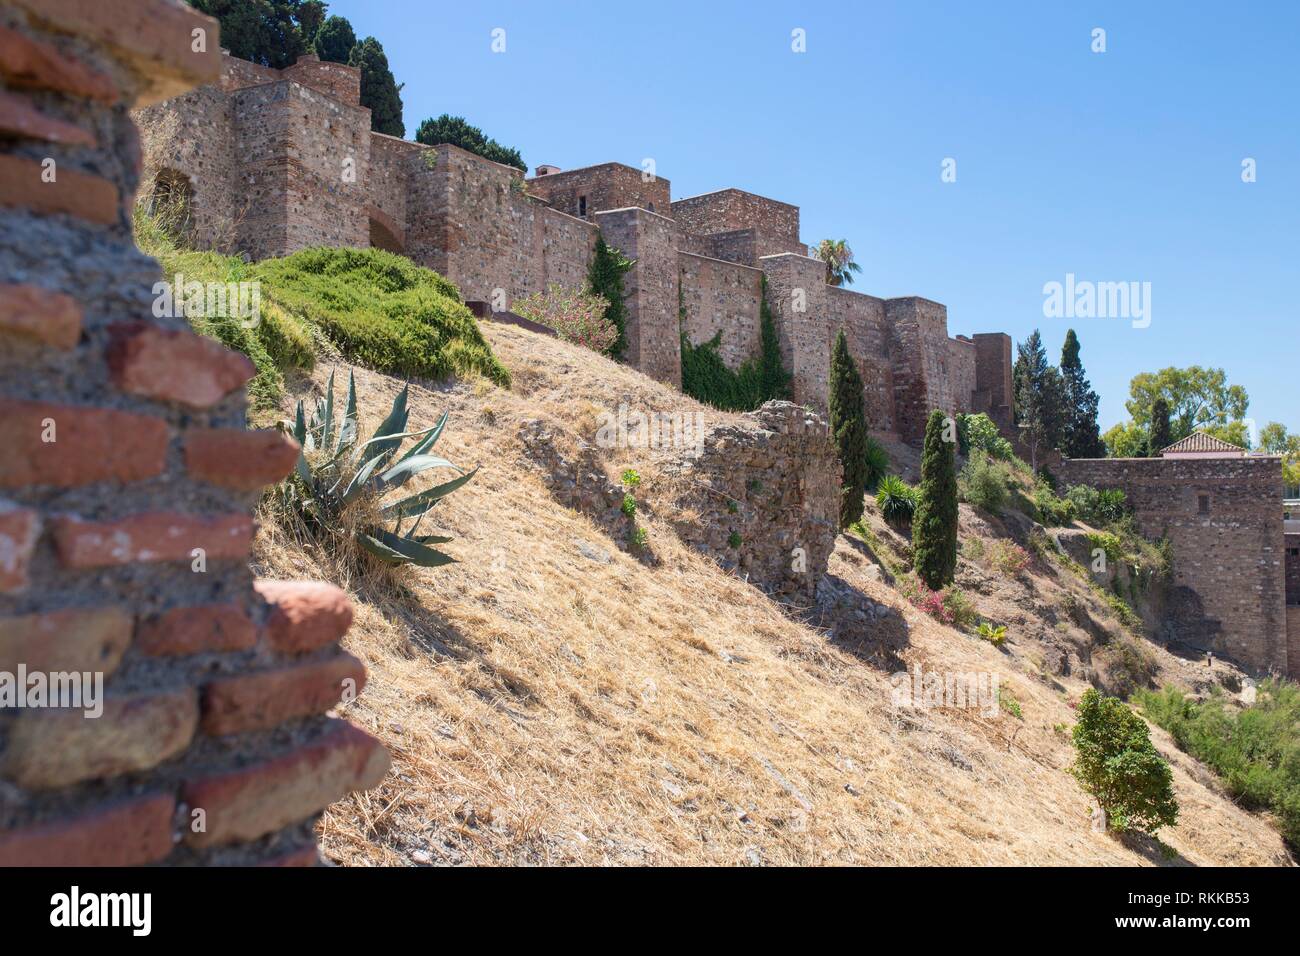 Le fortificazioni di Malaga Cittadella moresca. Circondato da piante verdi. Foto Stock